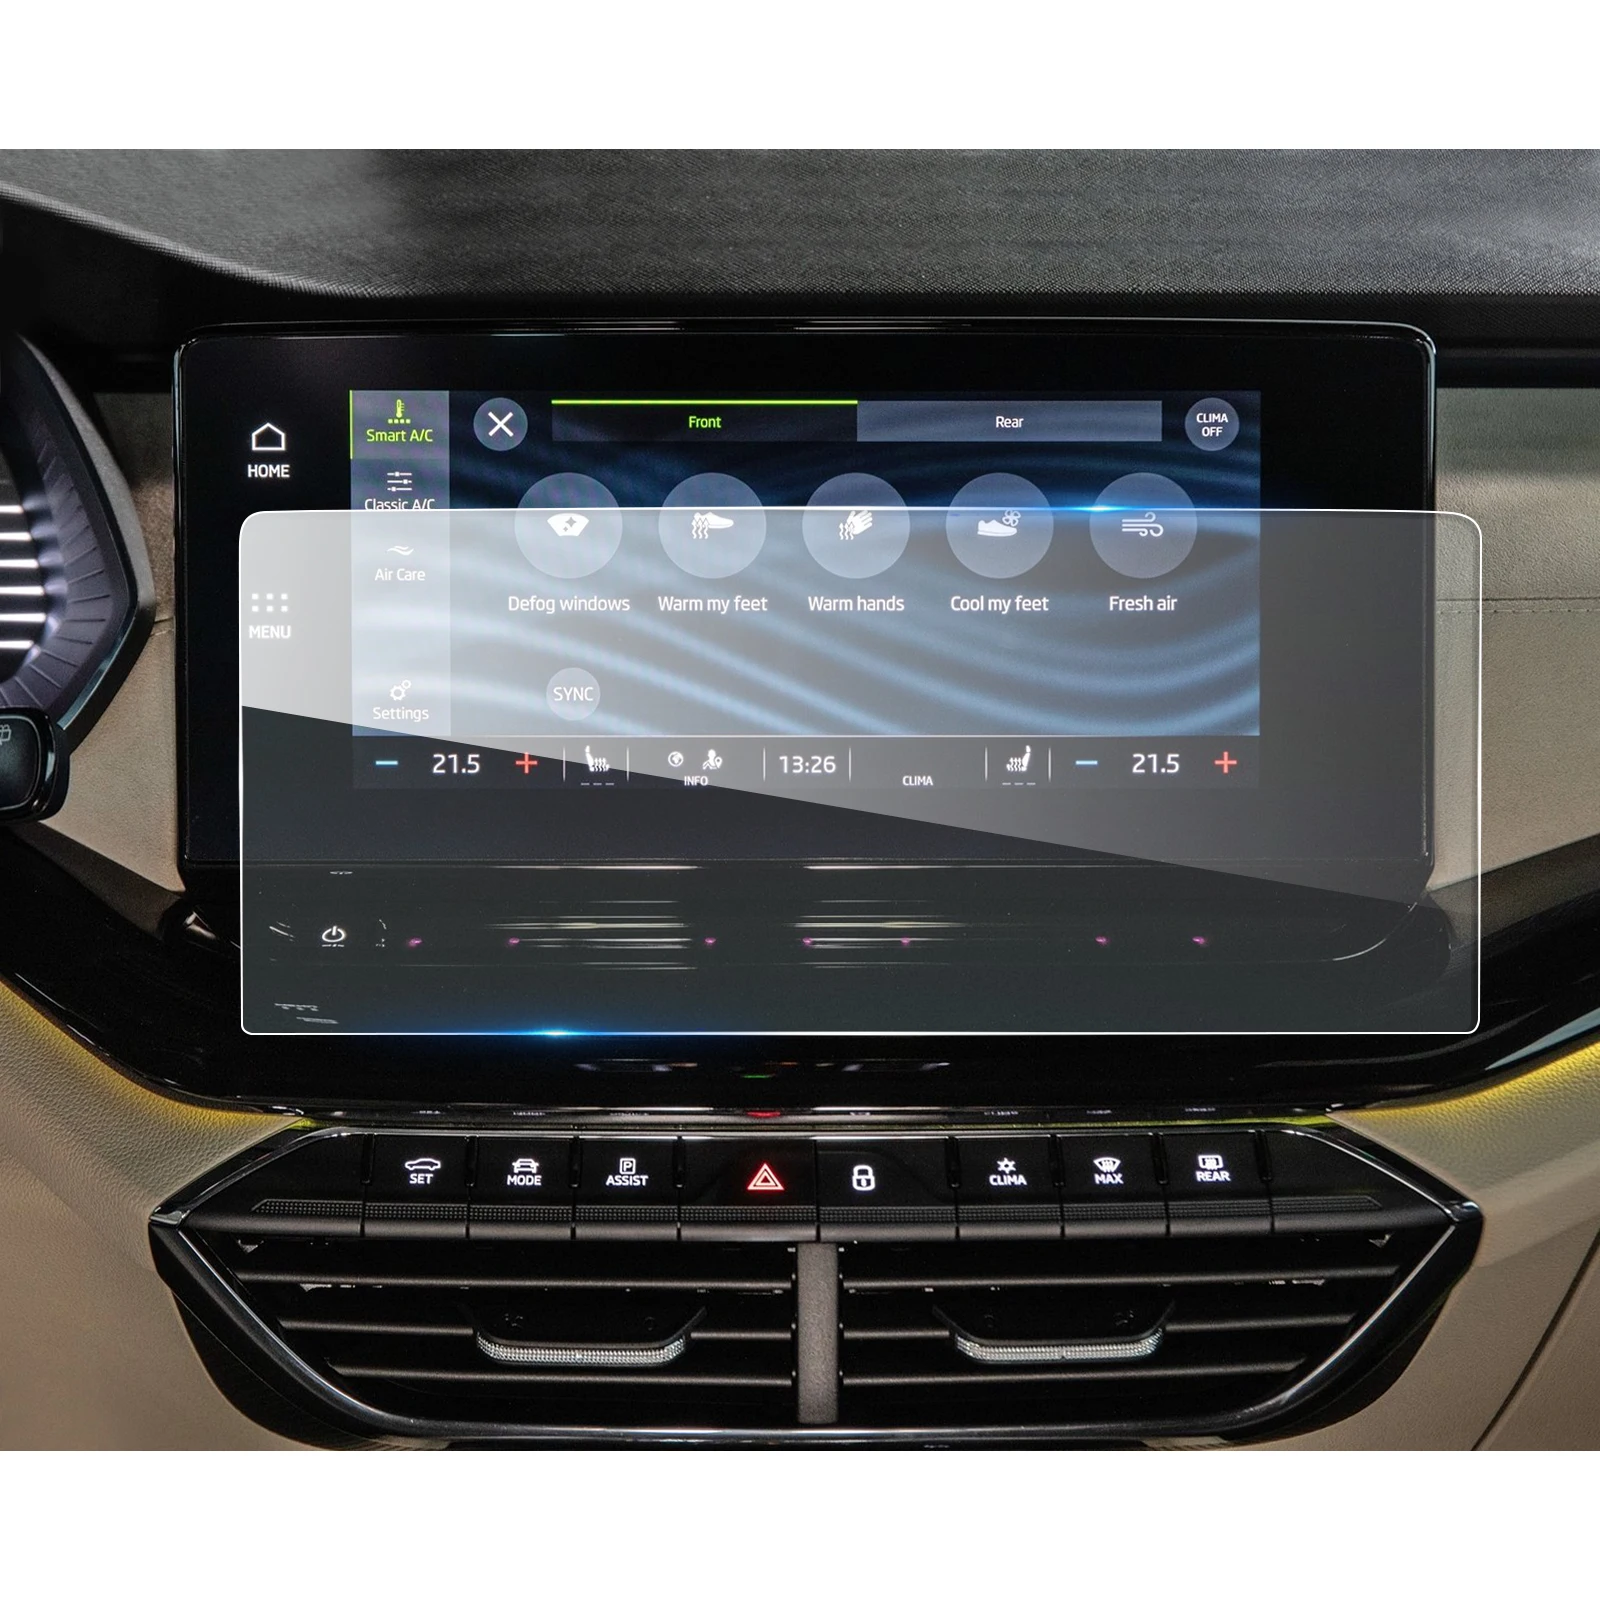 LFOTPP Octavia için Mk4 10 inç 2020 araba multimedya radyo ekran koruyucu oto İç koruyucu Sticker 312*134MM